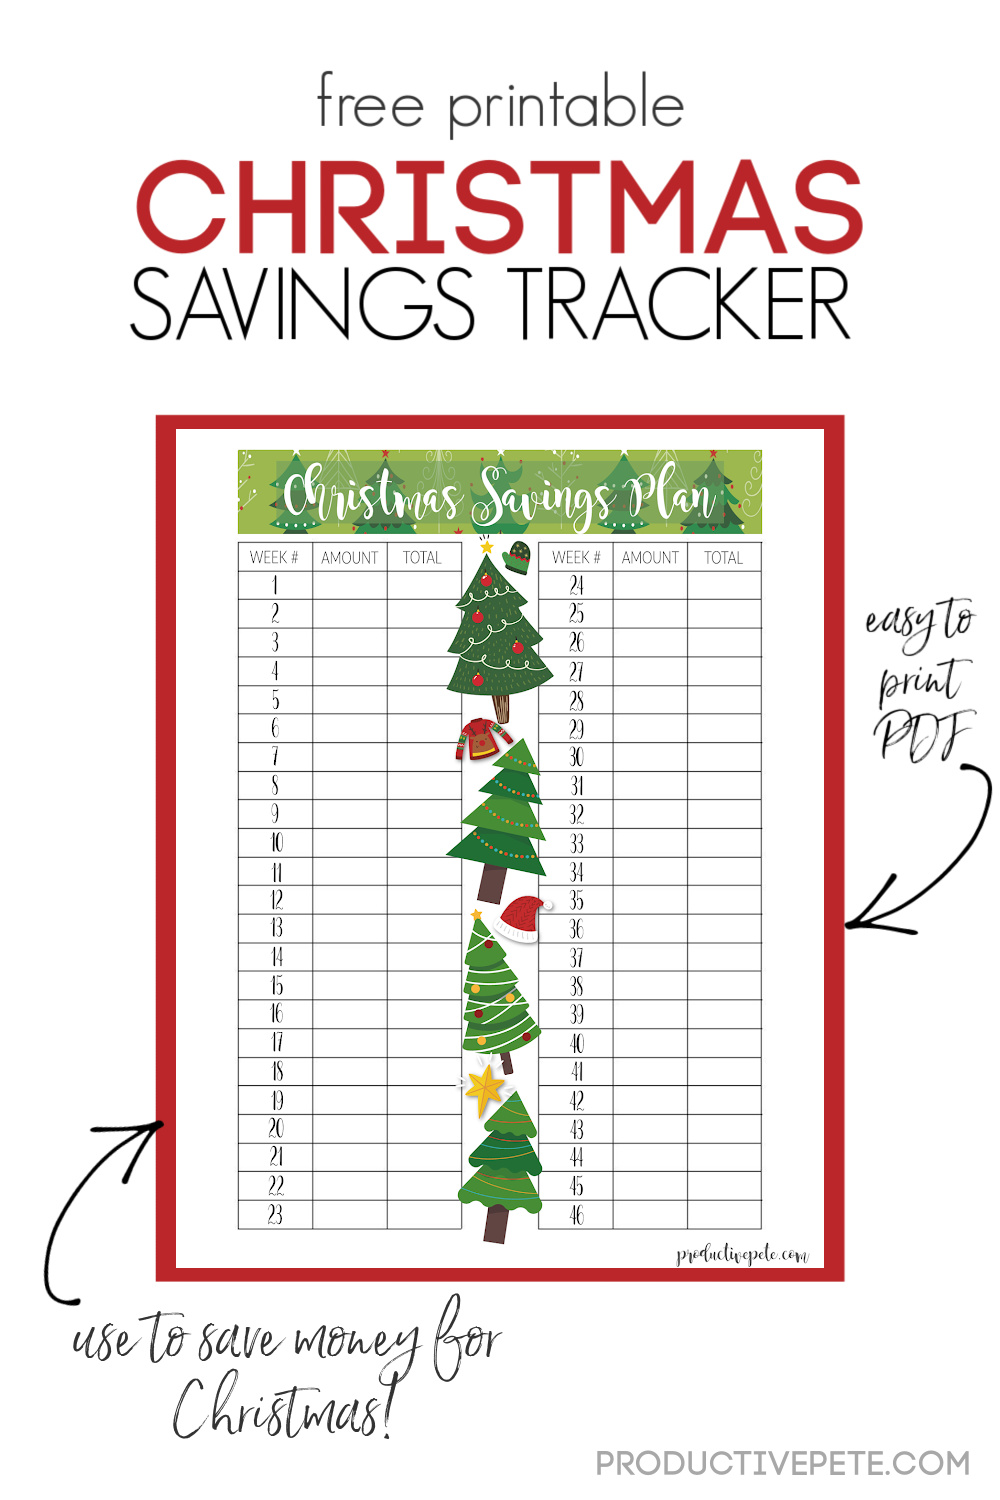 free-printable-christmas-savings-plan-tracker-you-can-customize